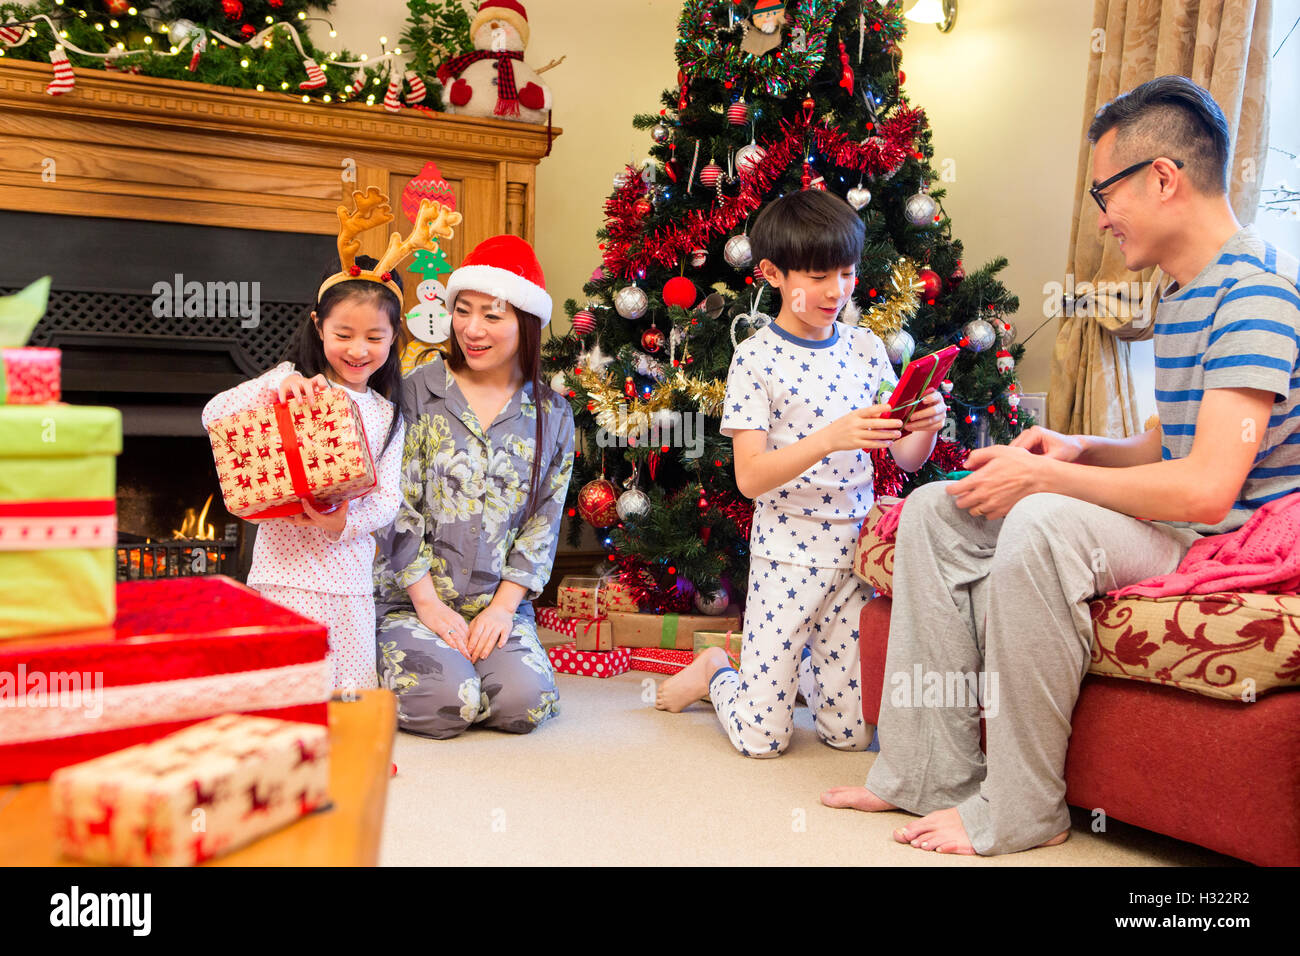 L'ouverture de la famille chinoise présente en même temps le matin de Noël. Ils sont tous assis dans le salon en pyjama Banque D'Images